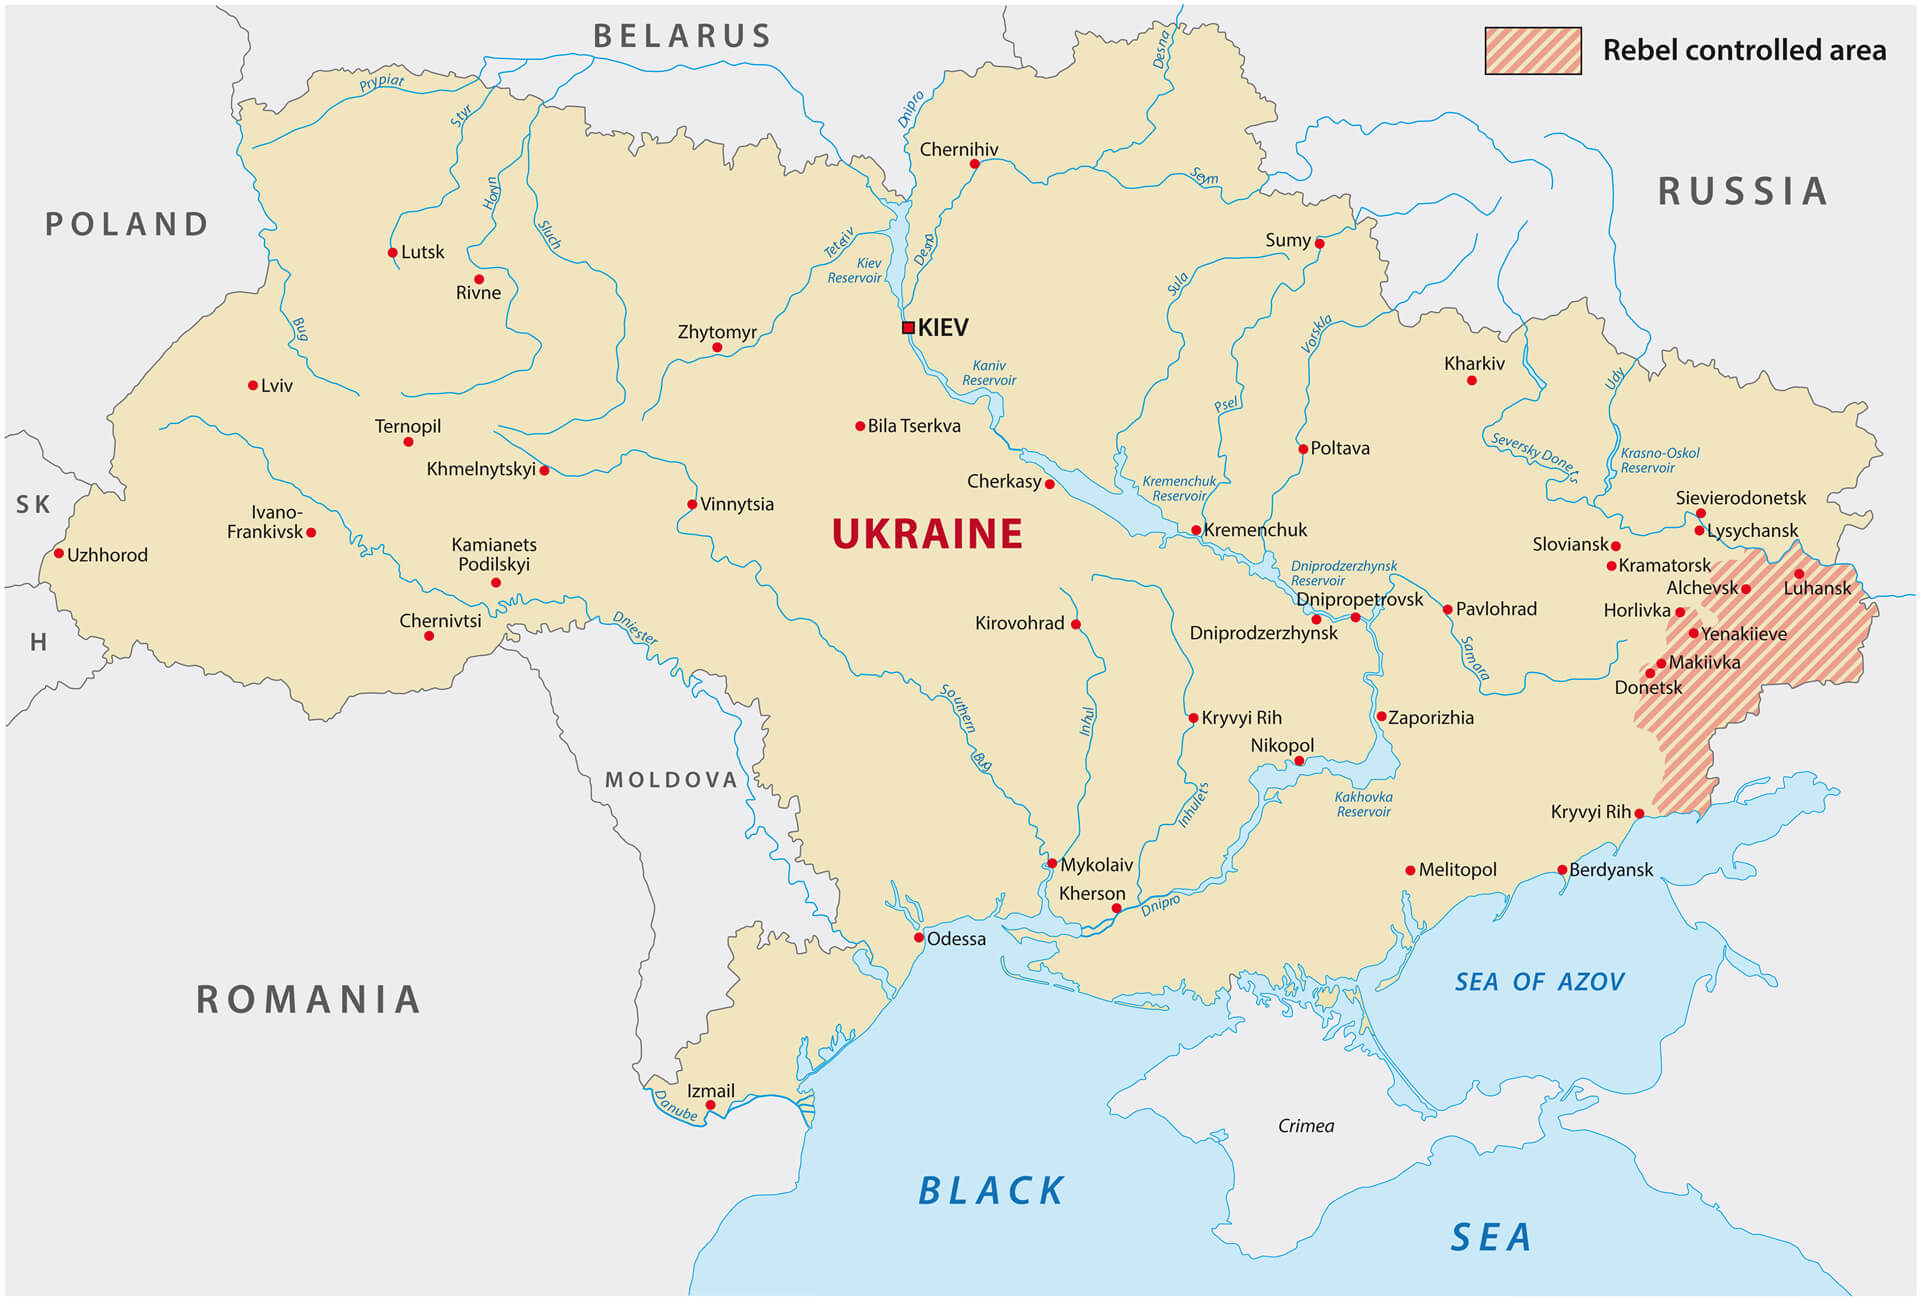 Karte des kontrollierten Gebiets der ukrainischen Rebellen